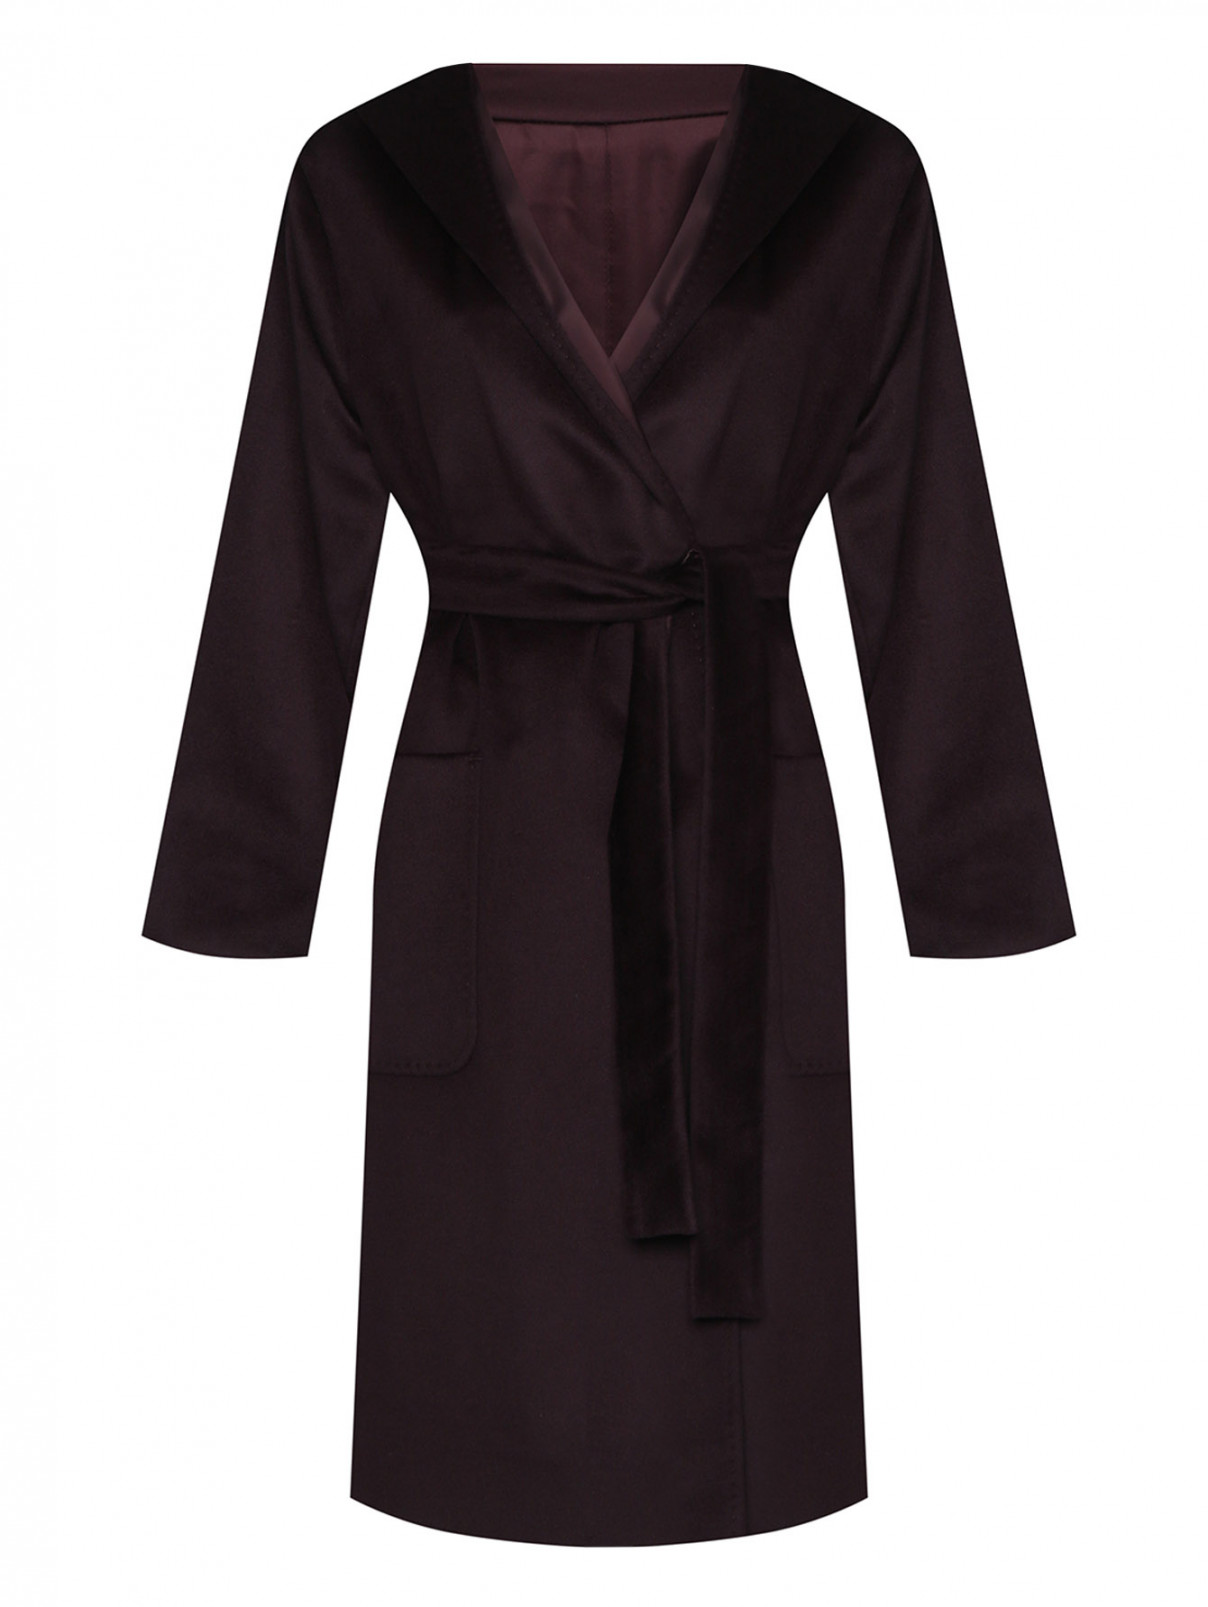 Пальто с капюшоном и поясом Marina Rinaldi  –  Общий вид  – Цвет:  Фиолетовый